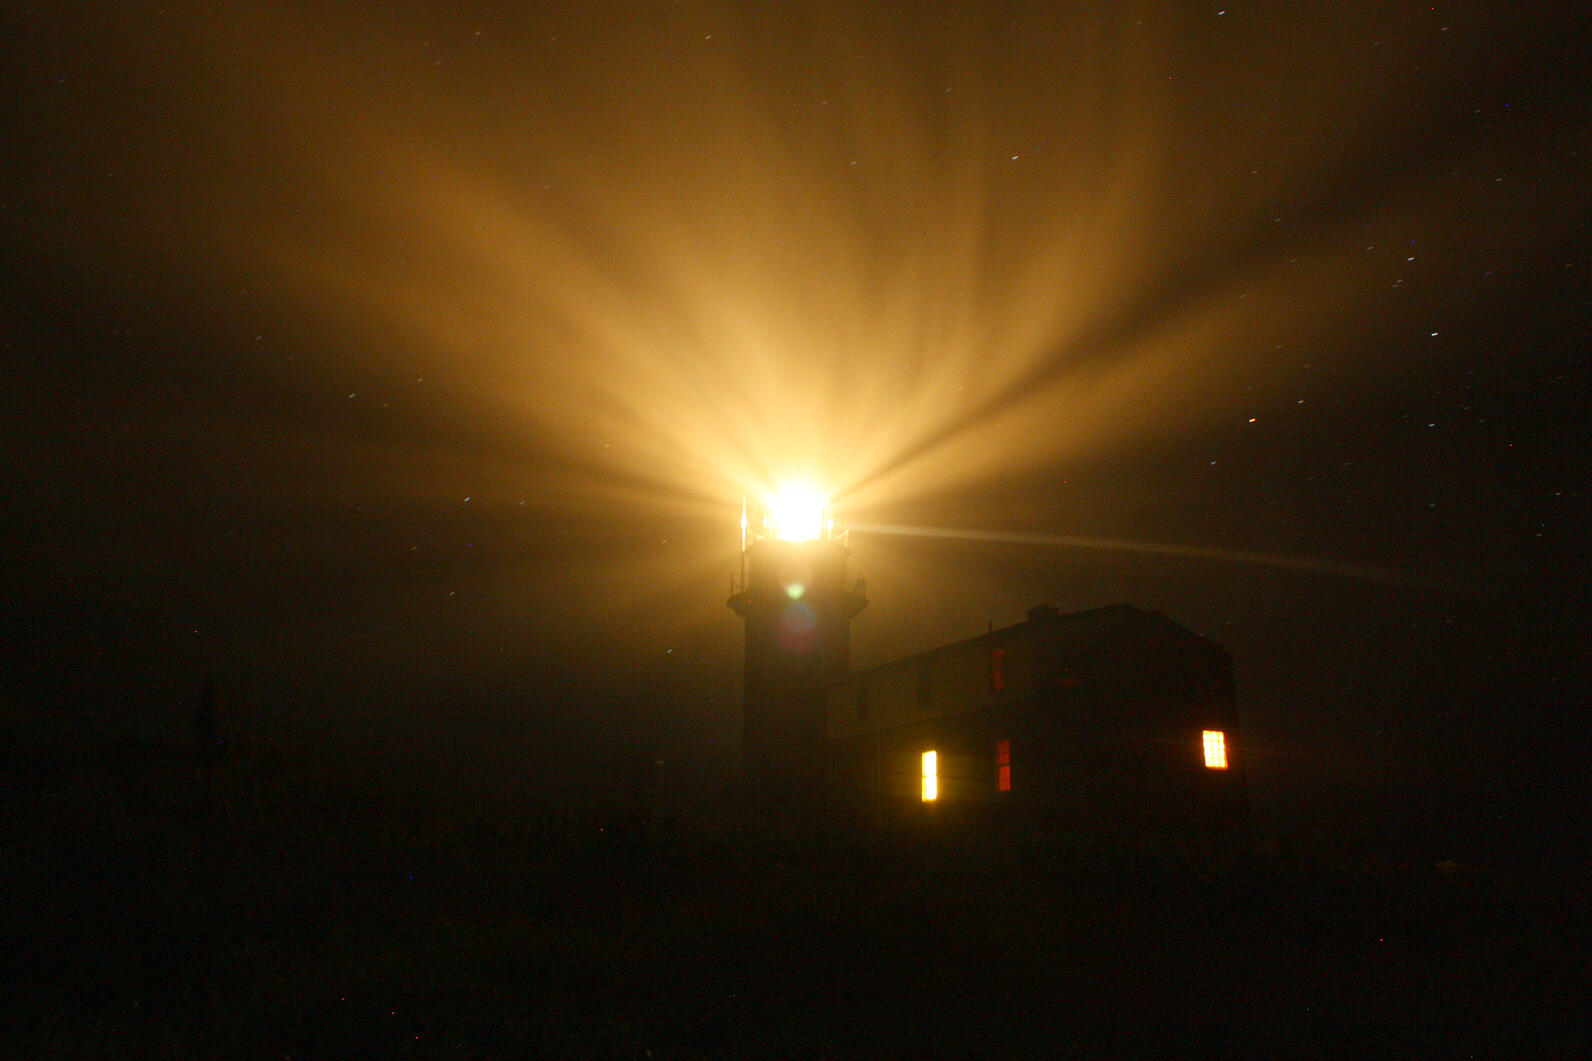 Matinicus Rock Lighthouse at Night